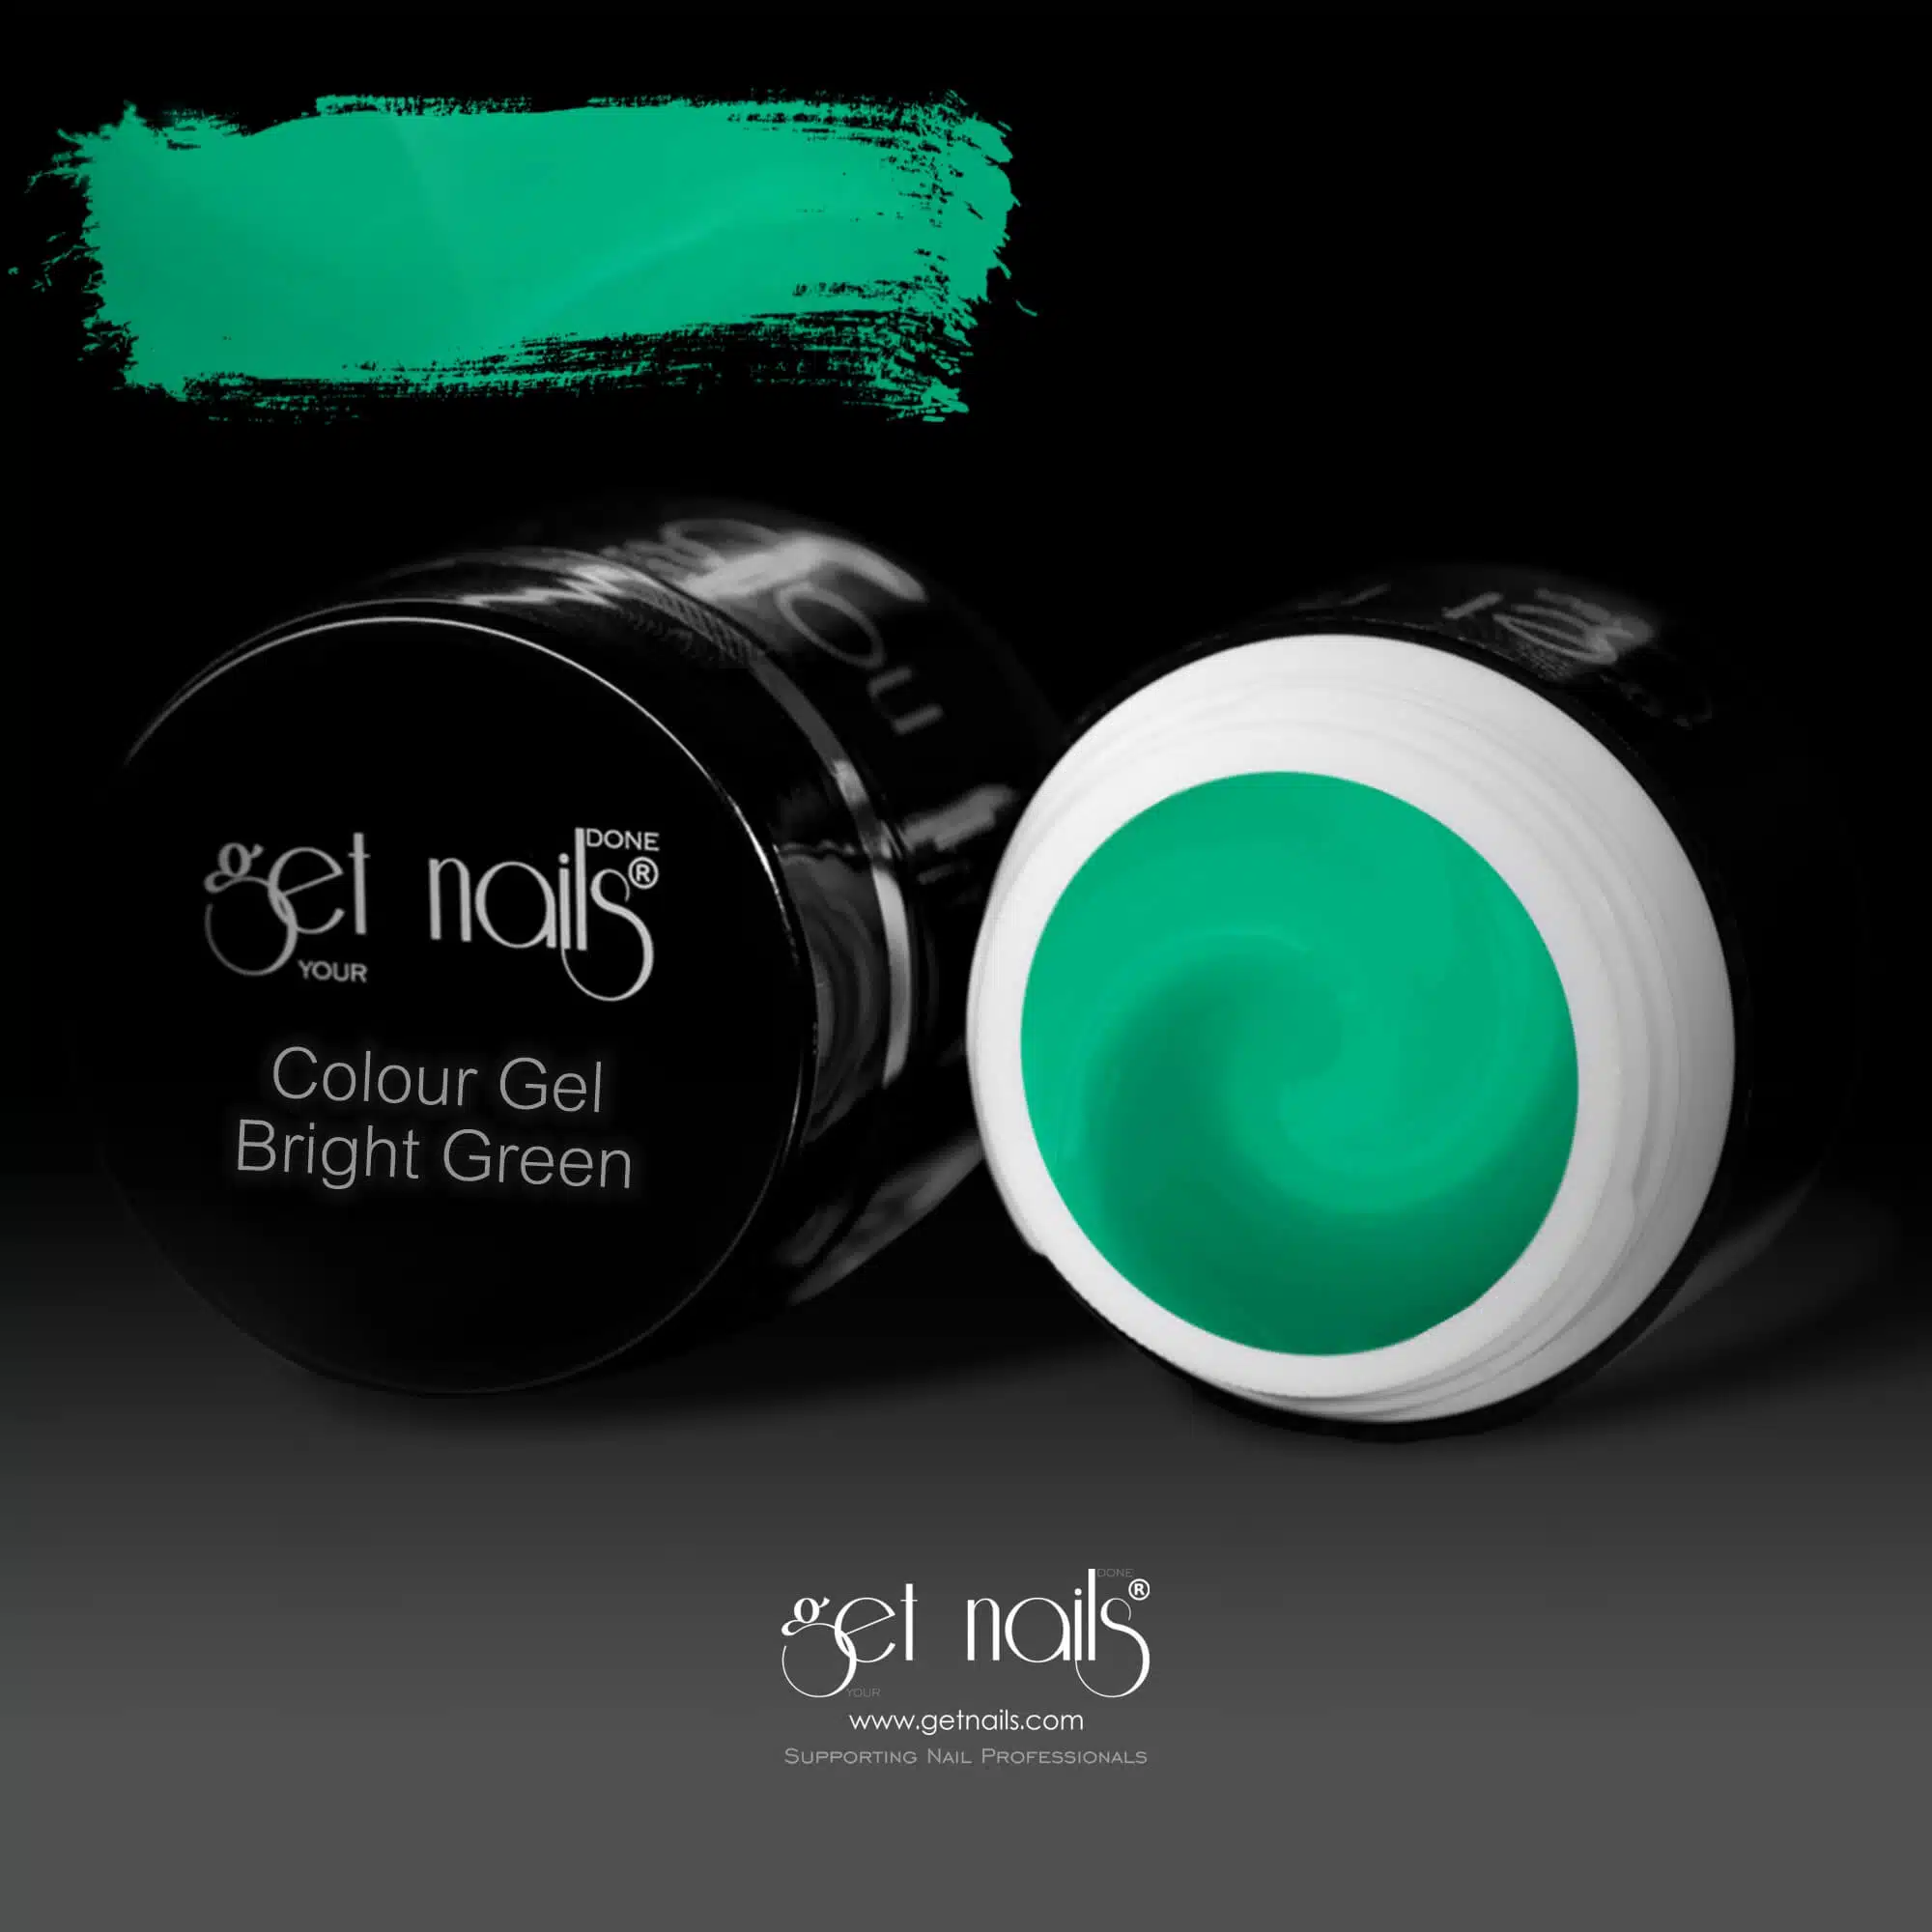 Get Nails Austria - Color Gel Bright Green 5g